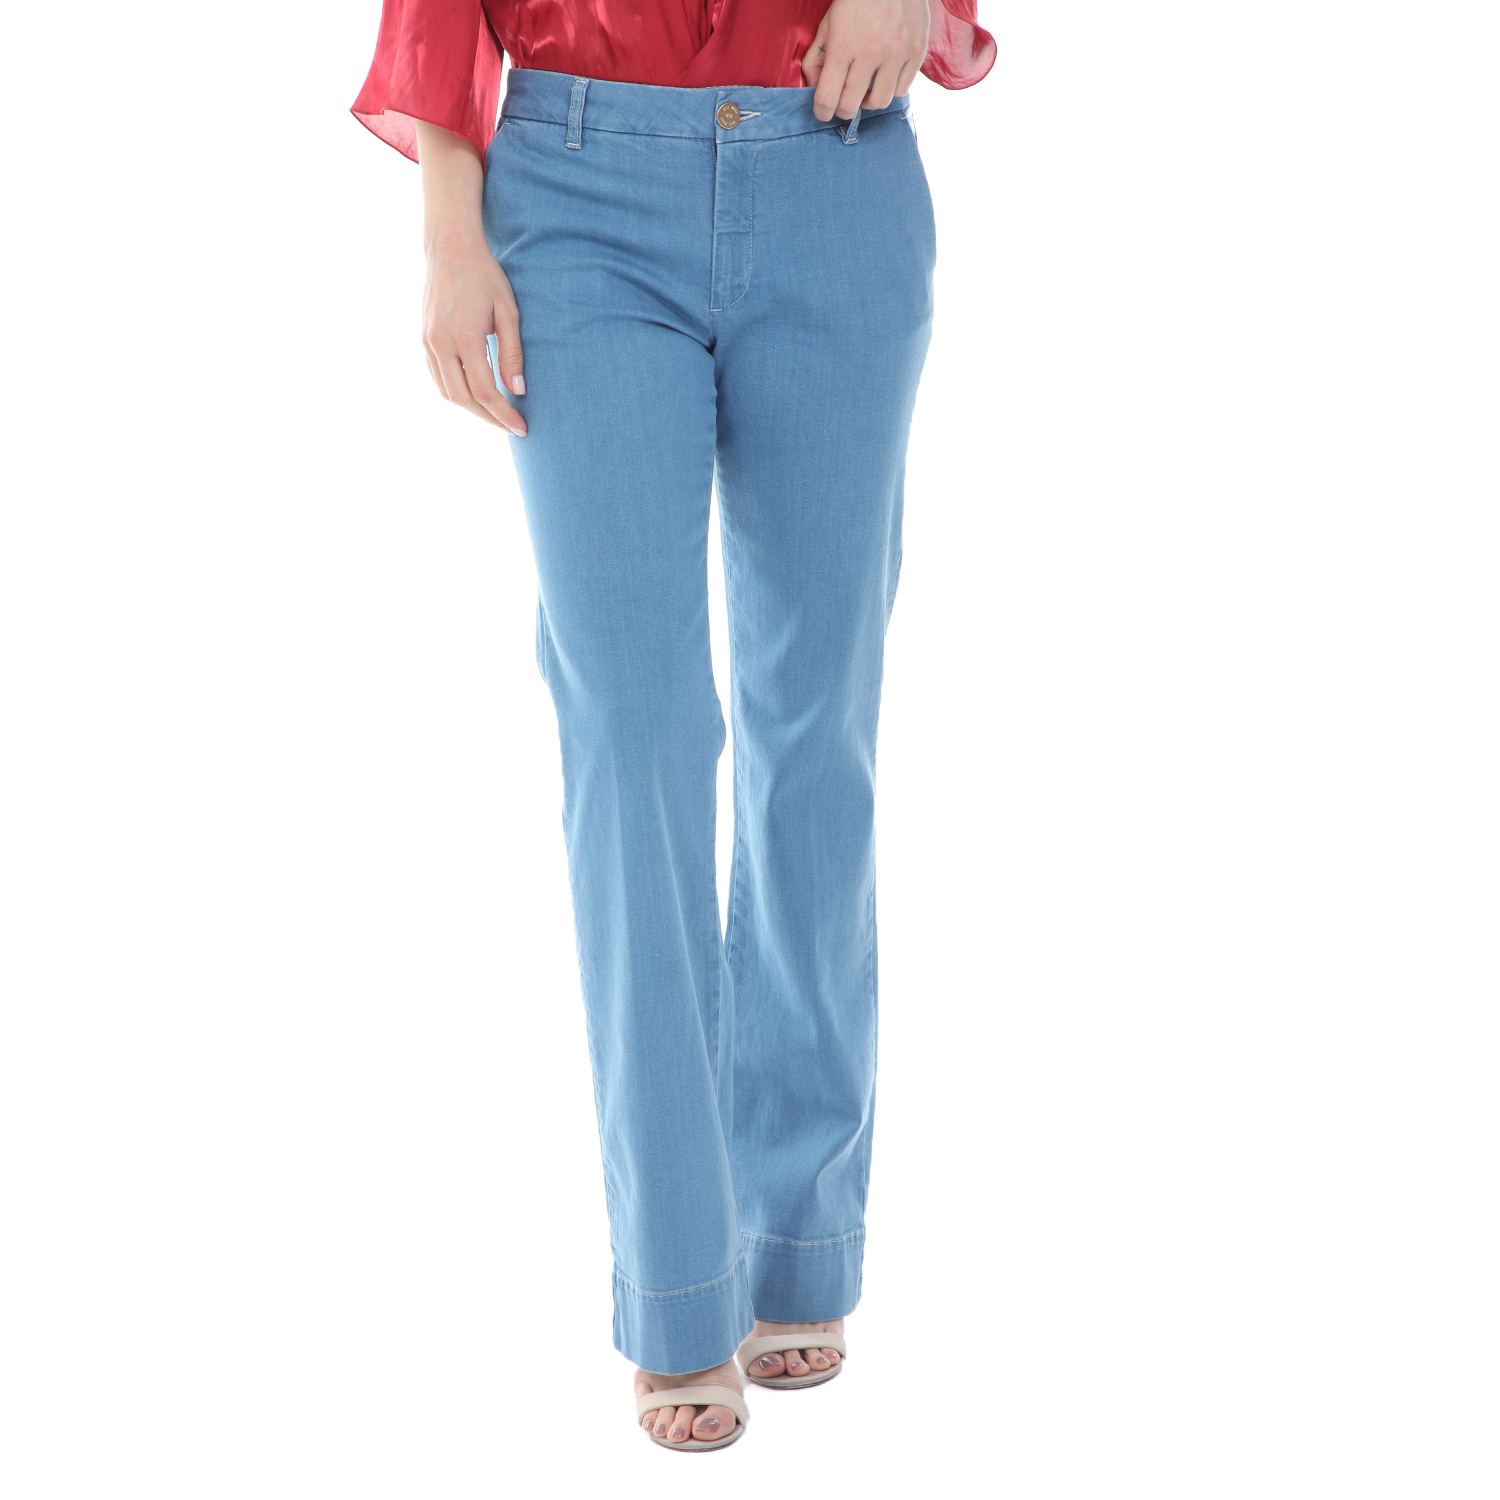 Γυναικεία/Ρούχα/Τζίν/Καμπάνες MOS MOSH - Γυναικείο jean παντελόνι MOS MOSH Farrah Sky μπλε